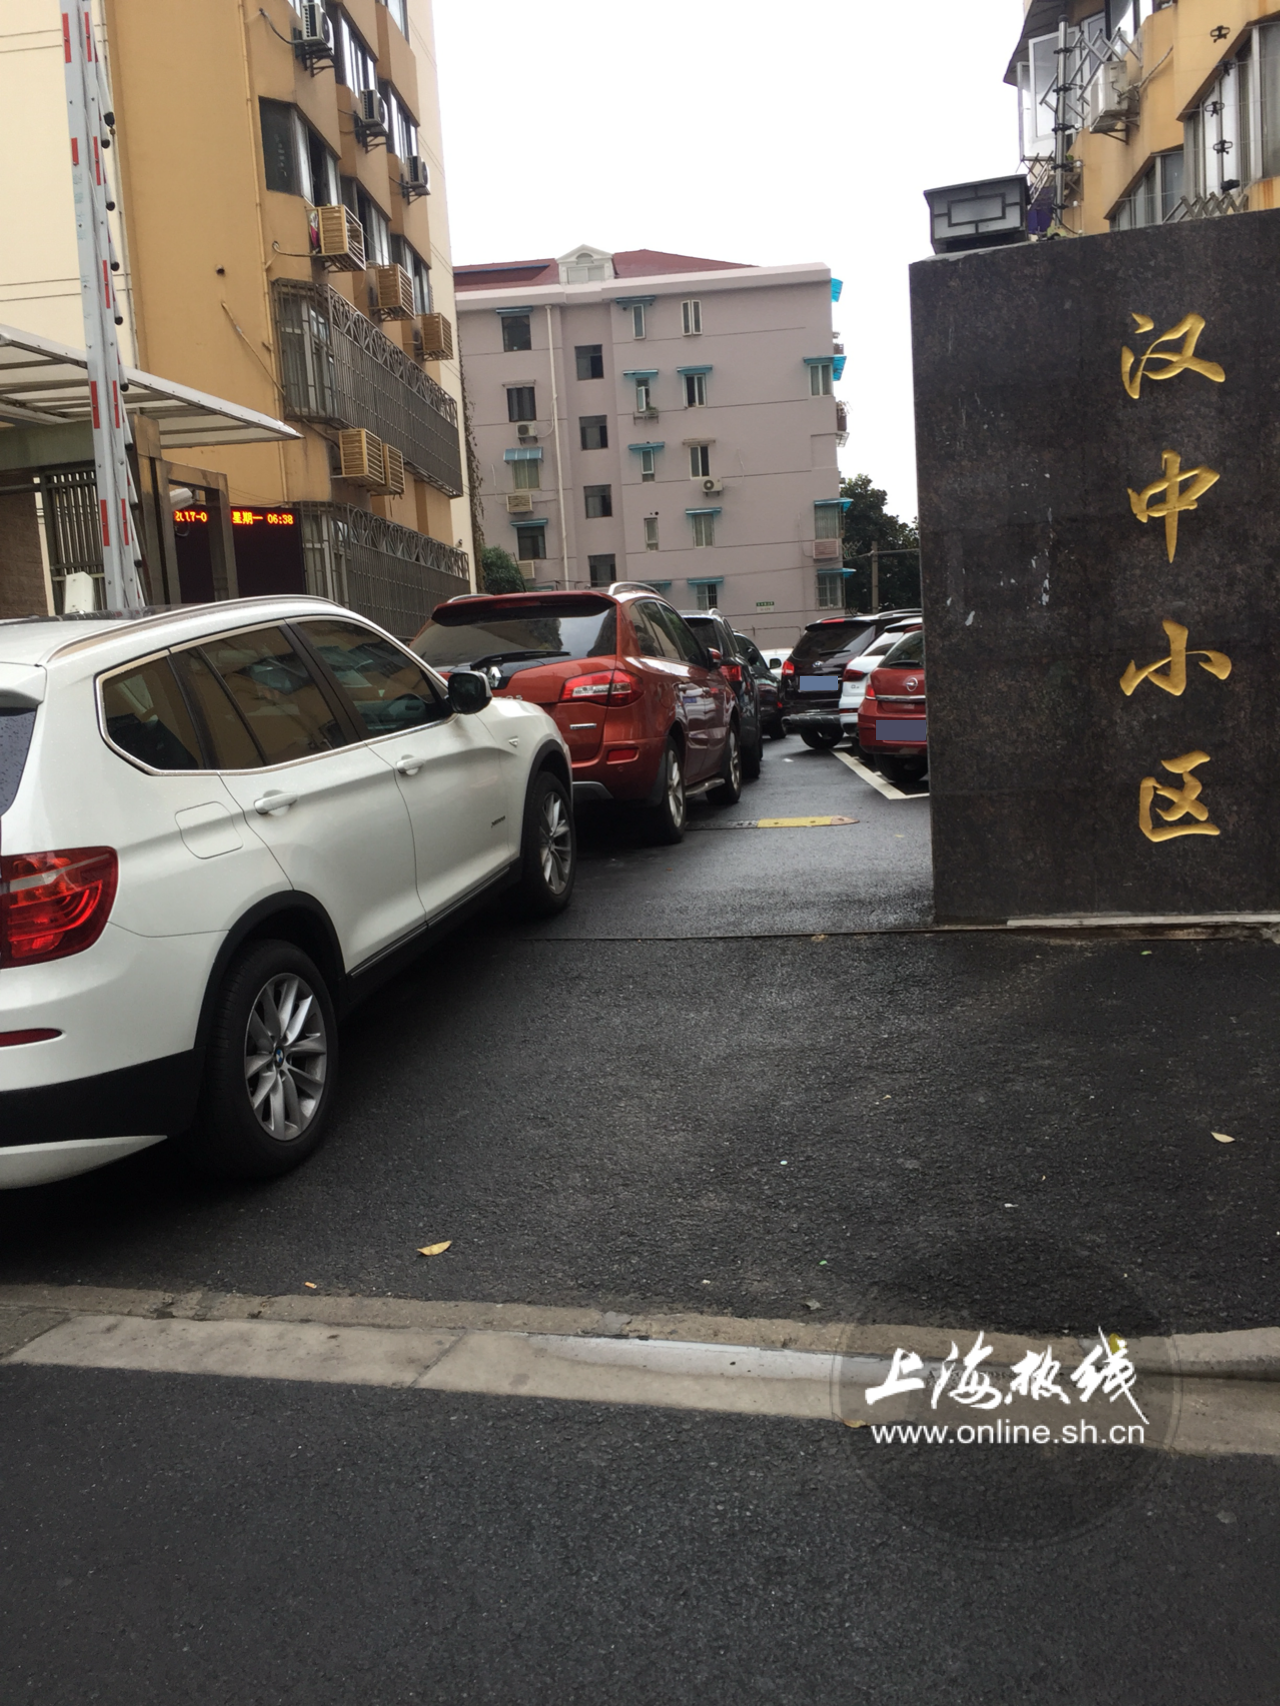 上海热线HOT新闻--上海静安区某小区上演停车